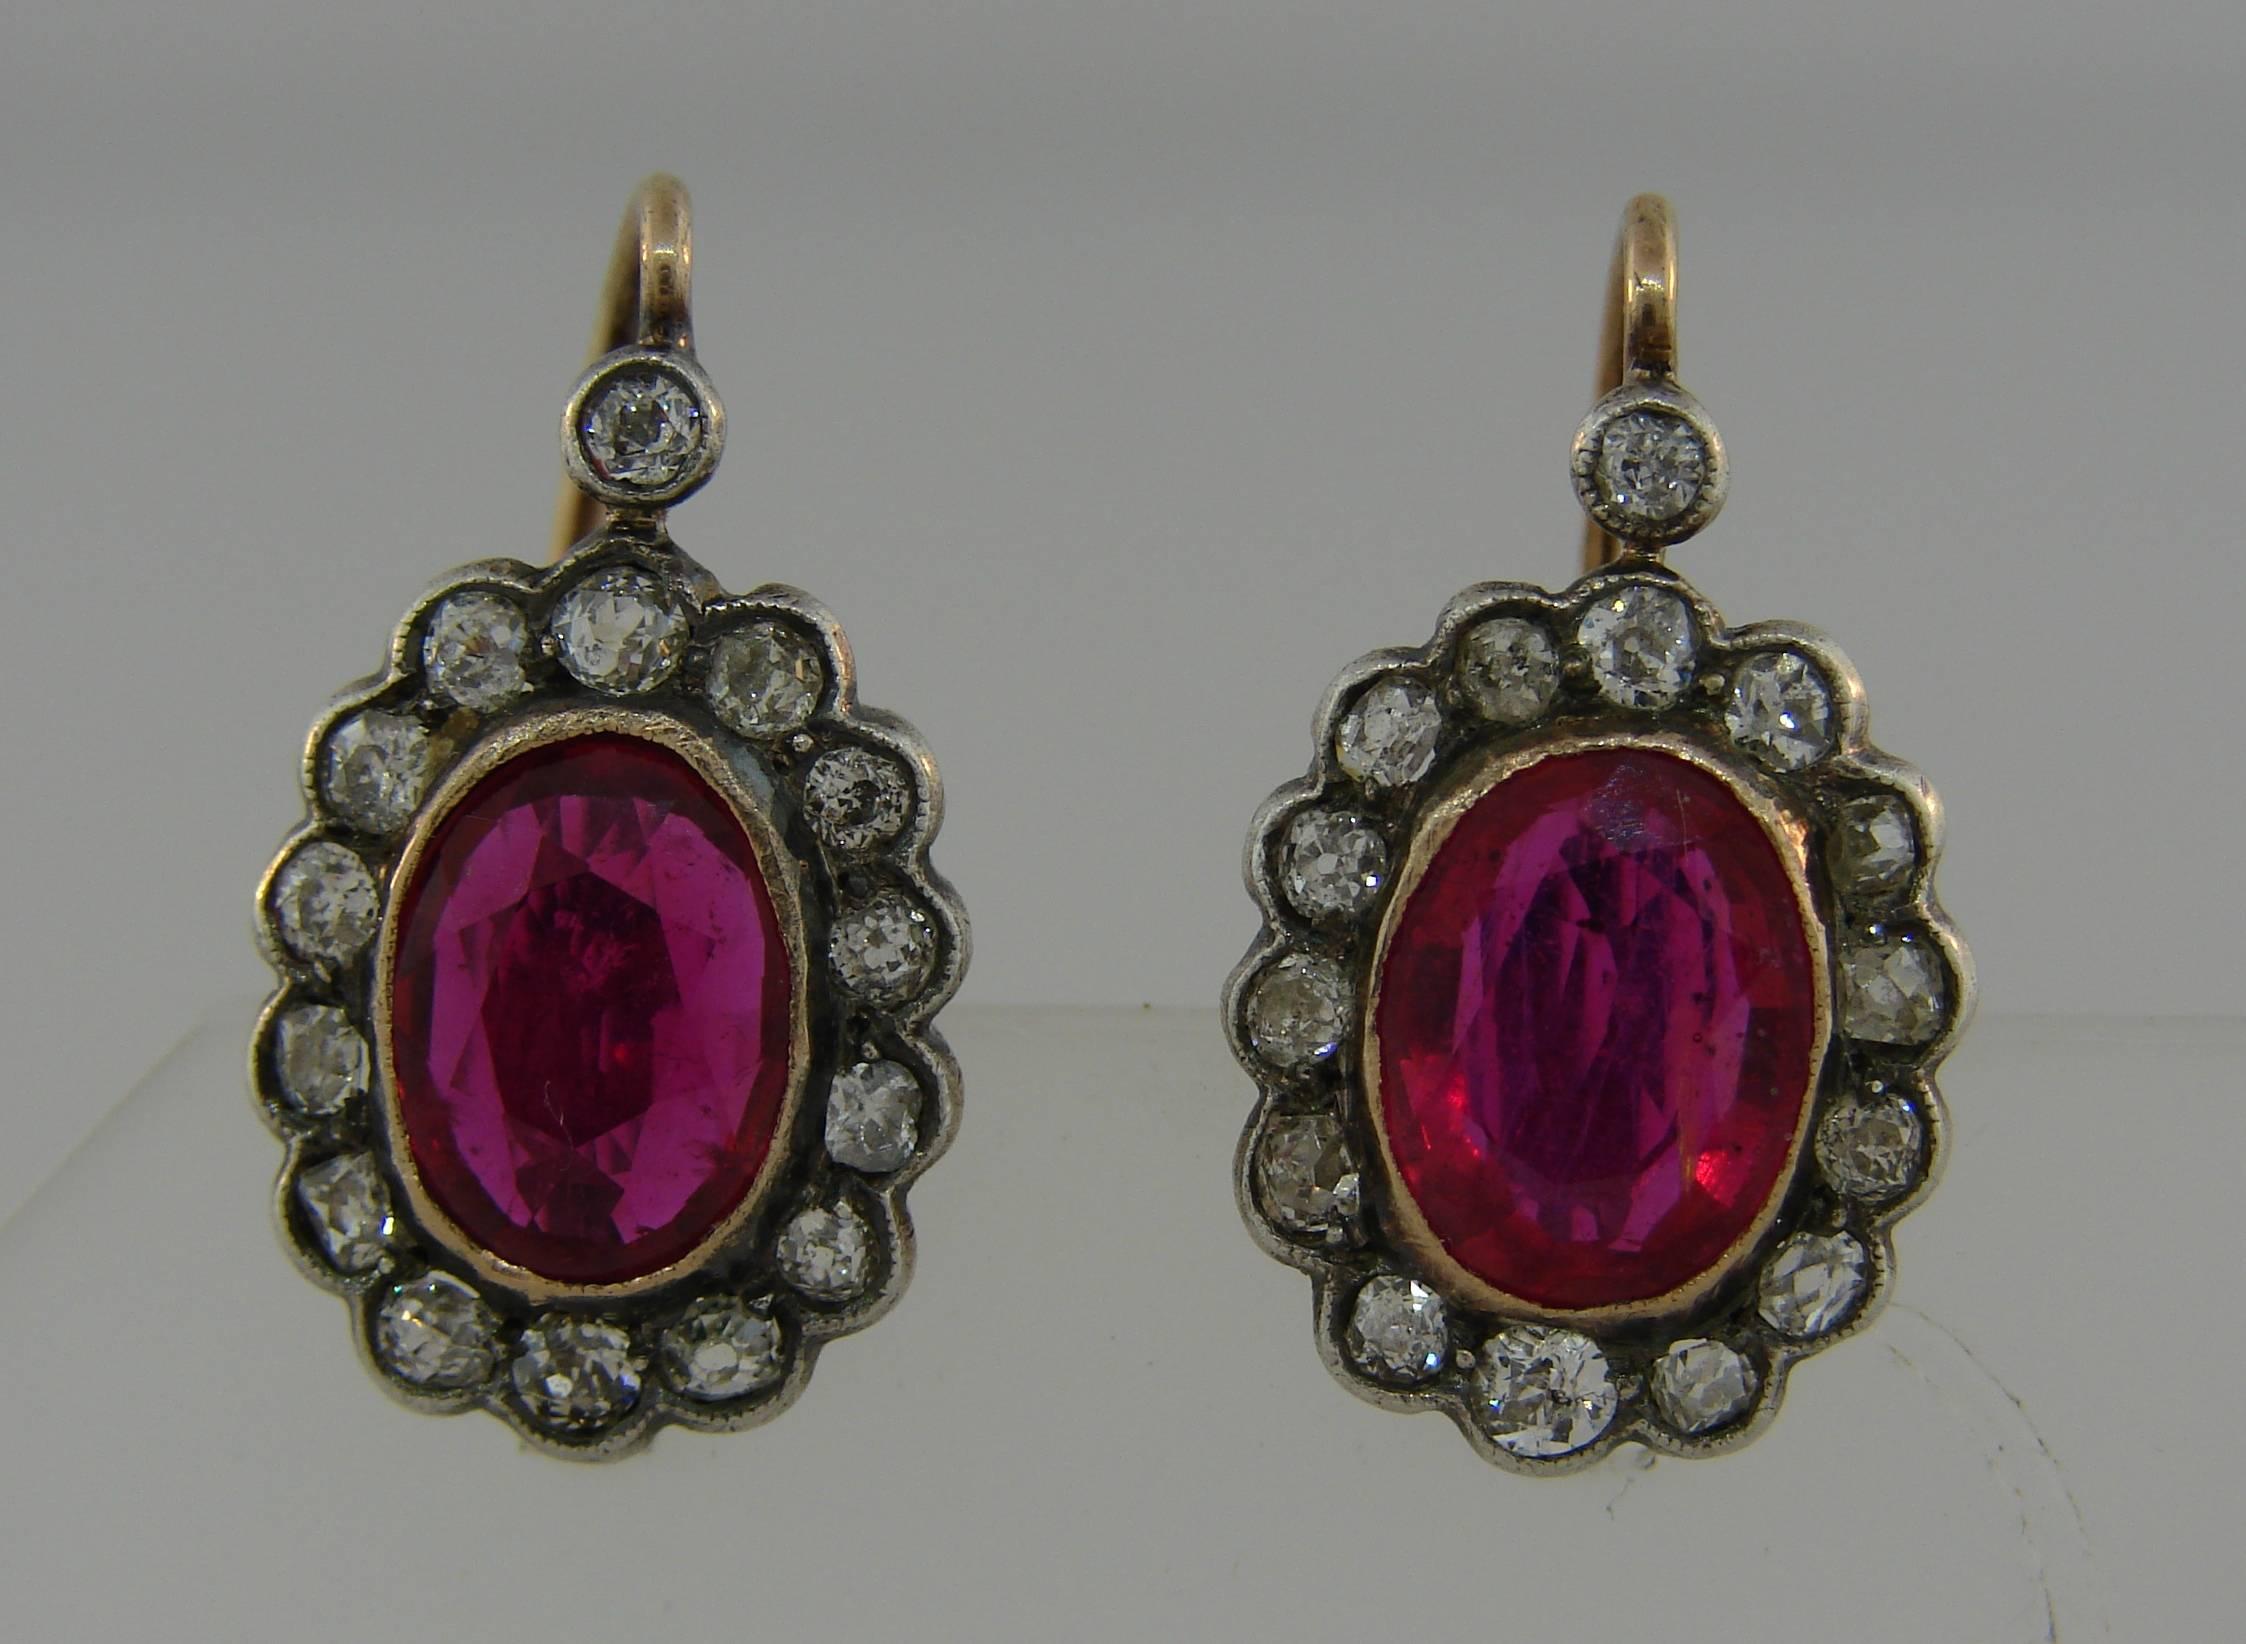 Wunderschönes Paar Cluster-Ohrringe mit Rubinen und Diamanten. Klassische und zeitlose Ohrringe, die eine großartige Ergänzung für Ihre Schmucksammlung darstellen. 

Die Rubine sind aus natürlichem Glas zusammengesetzt. Sie sind oval facettiert und